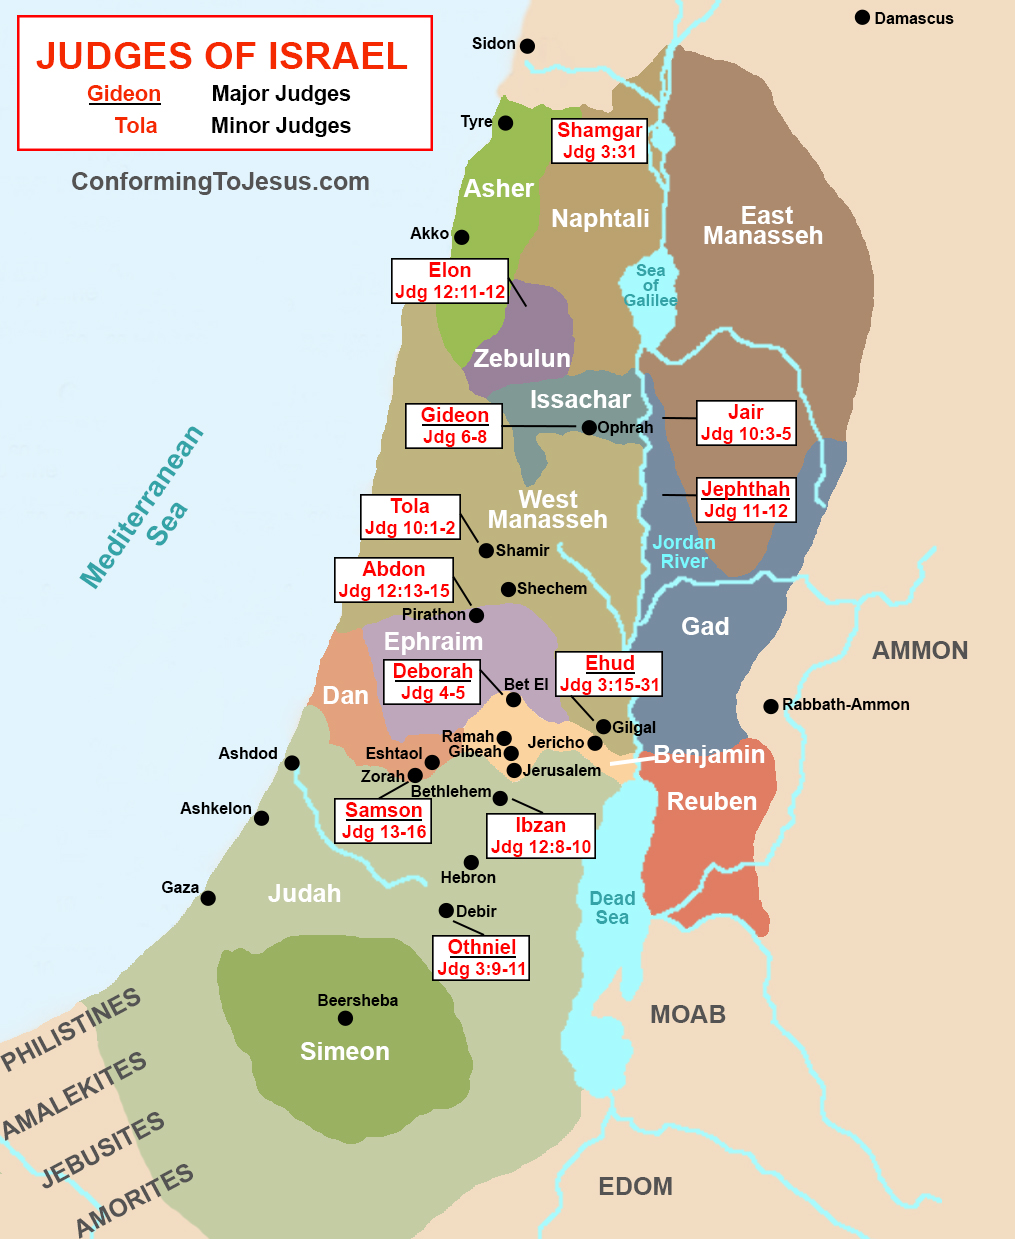 map of ancient israel Judges Of Ancient Israel Map Old Testament Biblical Judges